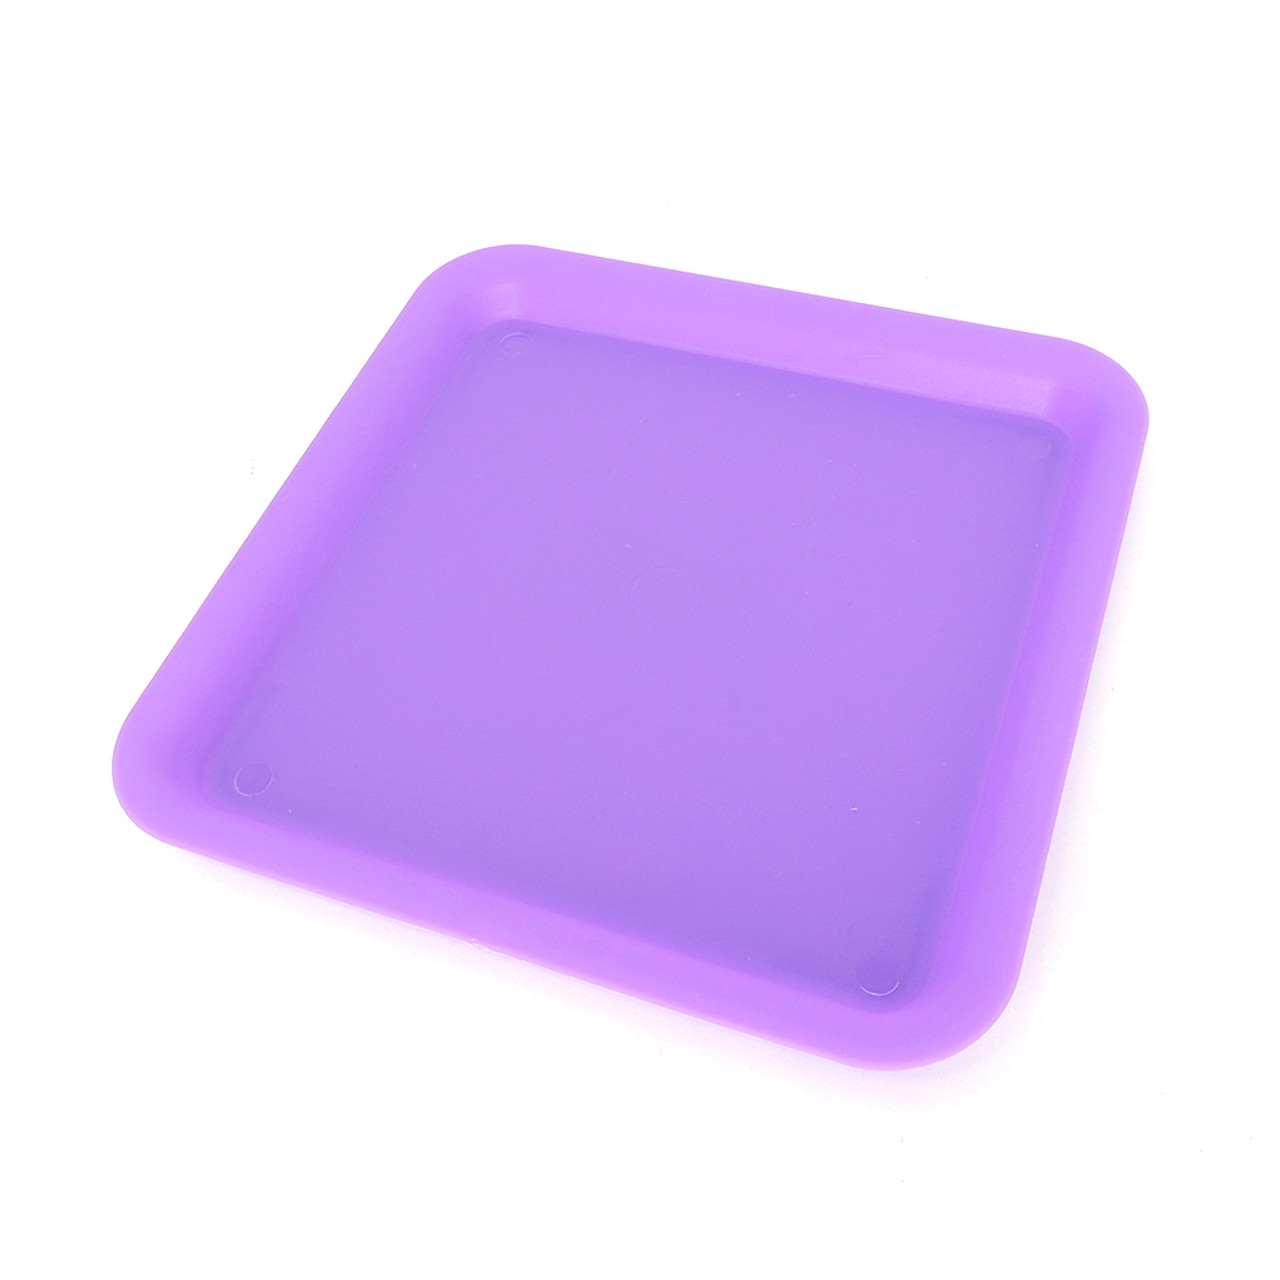 Plastic Rolling Tray in purple